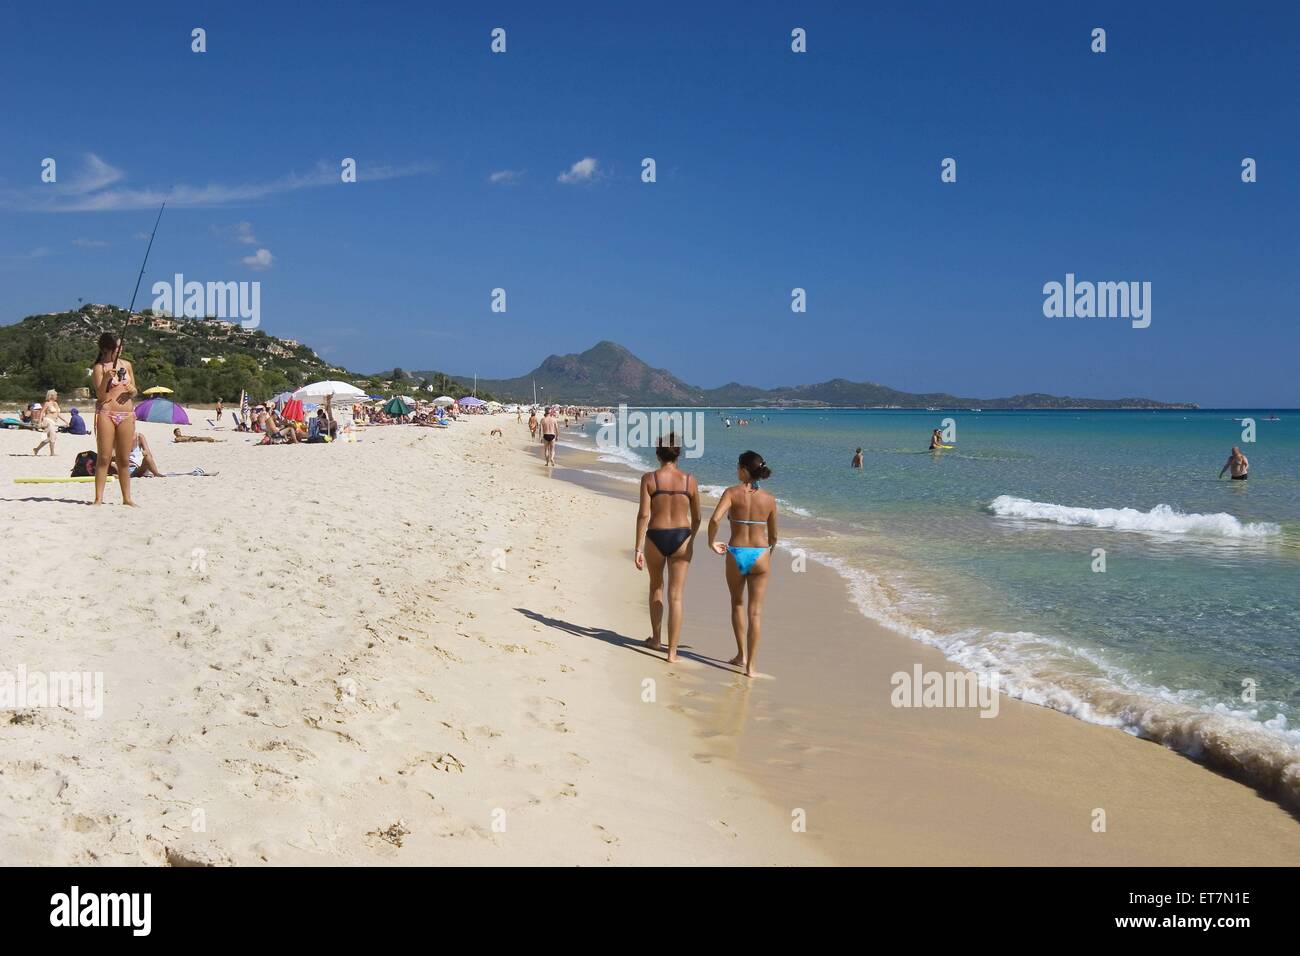 Urlauber am Sandstrand an der Costa Rei, Italien, Sardinien | tourists at sandy beach at Costa Rei, Italy, Sardegna Stock Photo